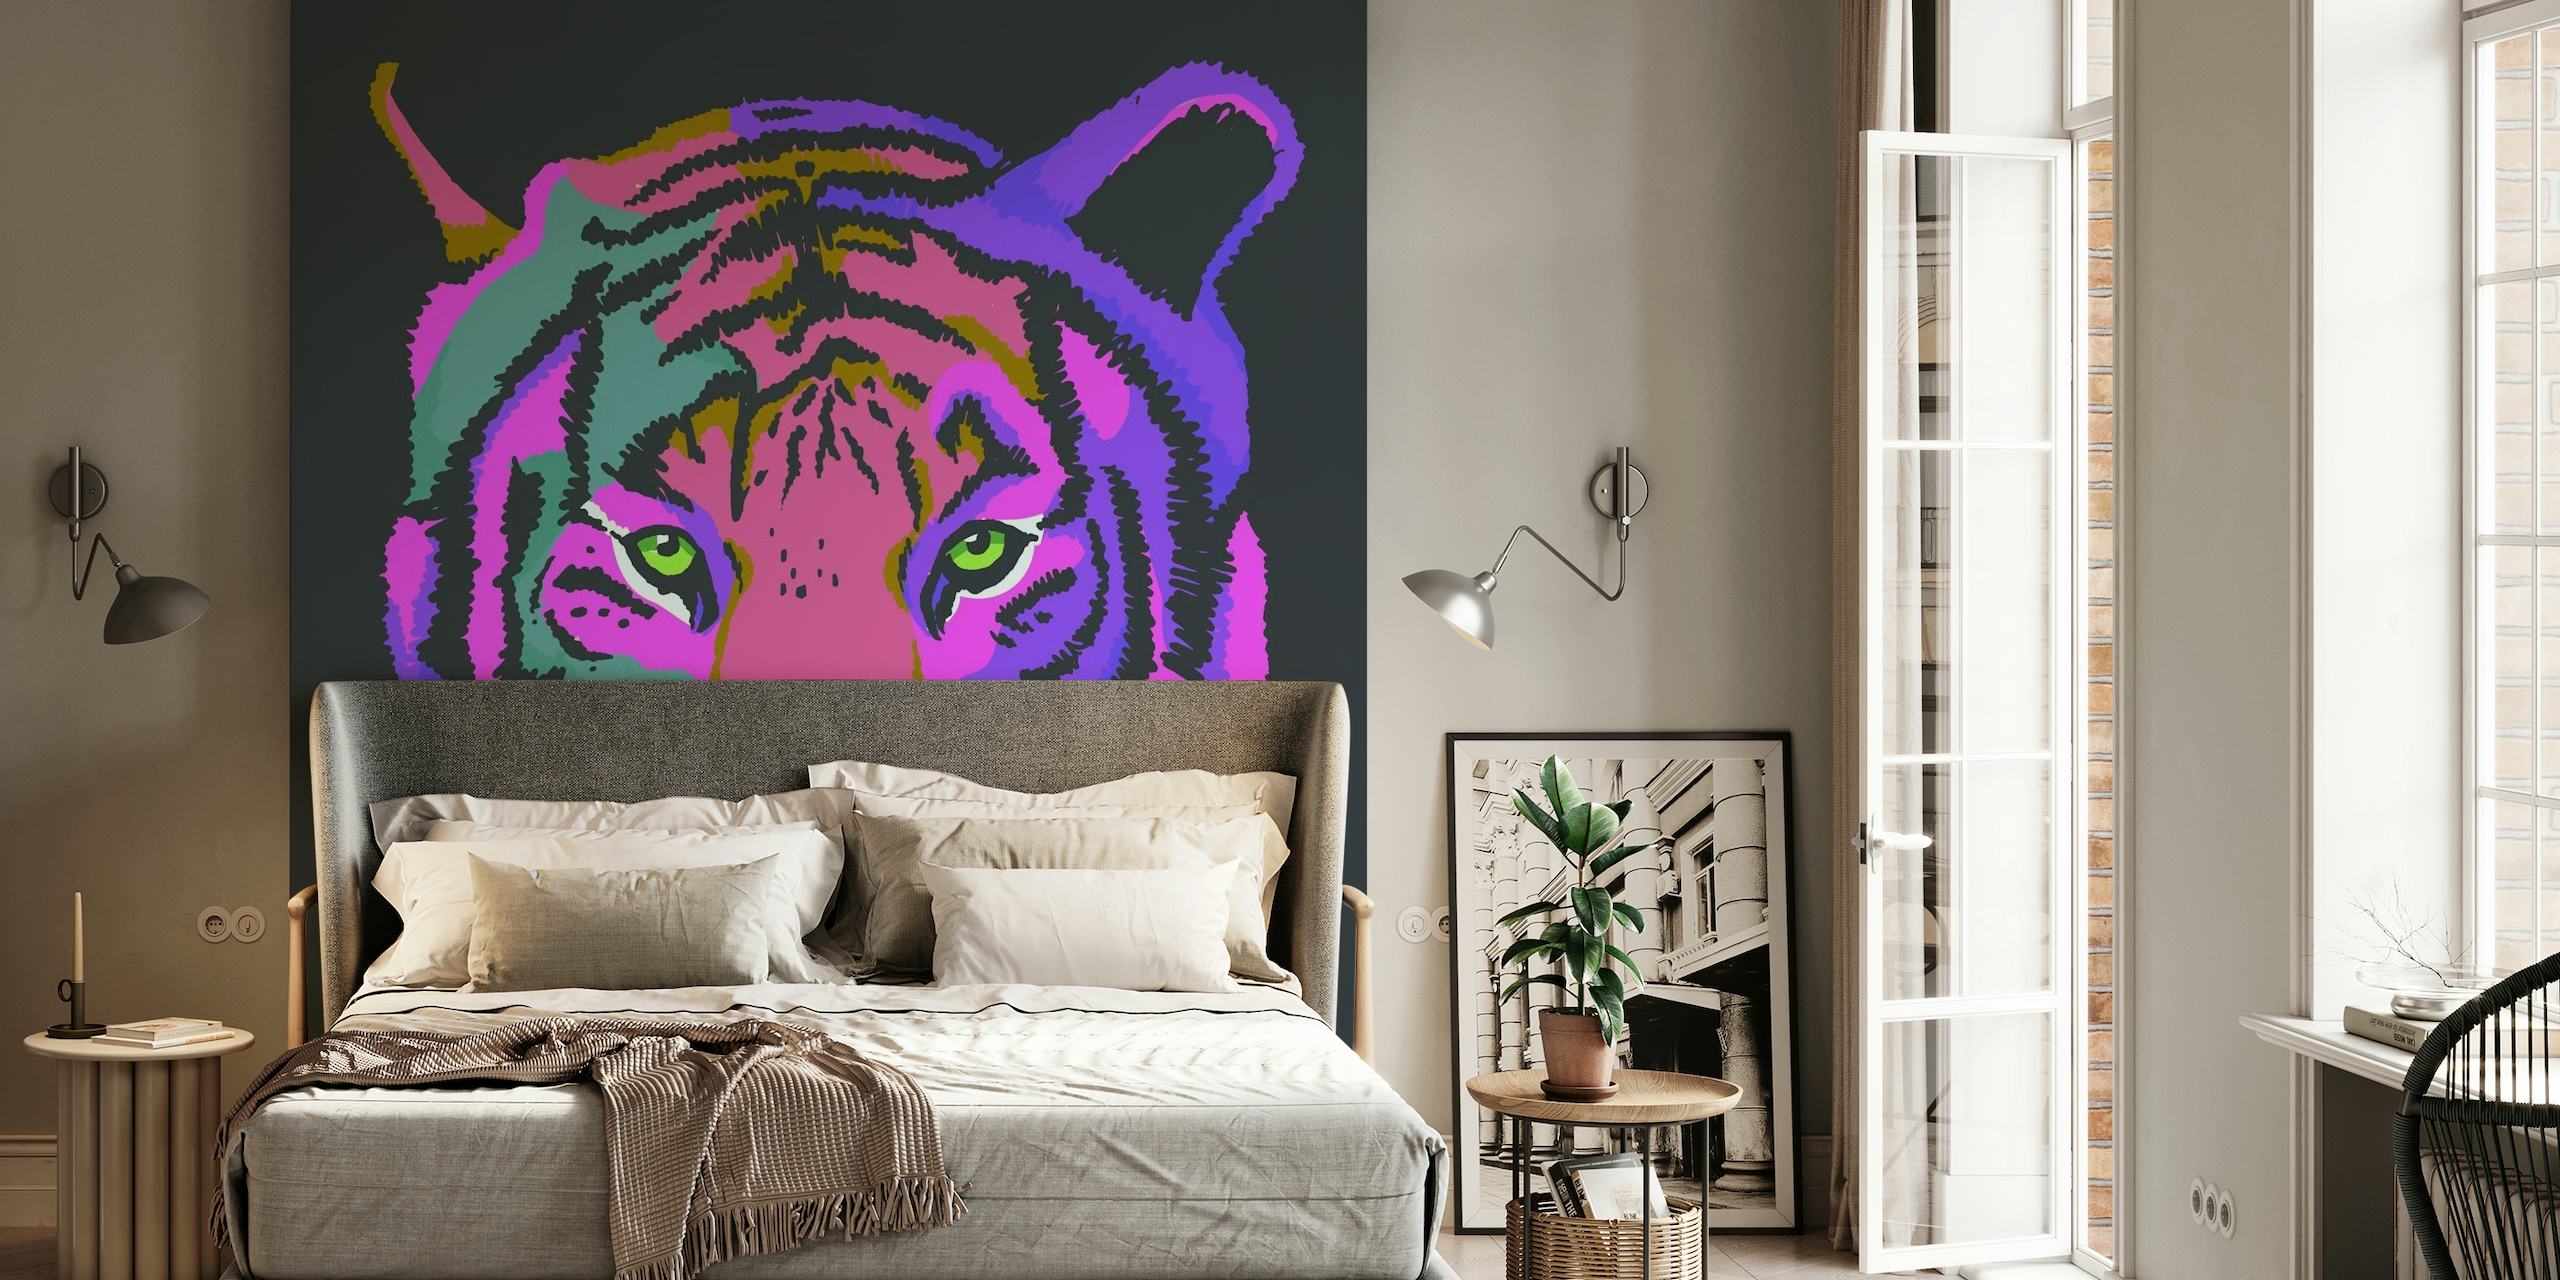 Um mural de parede colorido com um tigre estilizado em tons de roxo e rosa contra um fundo escuro.